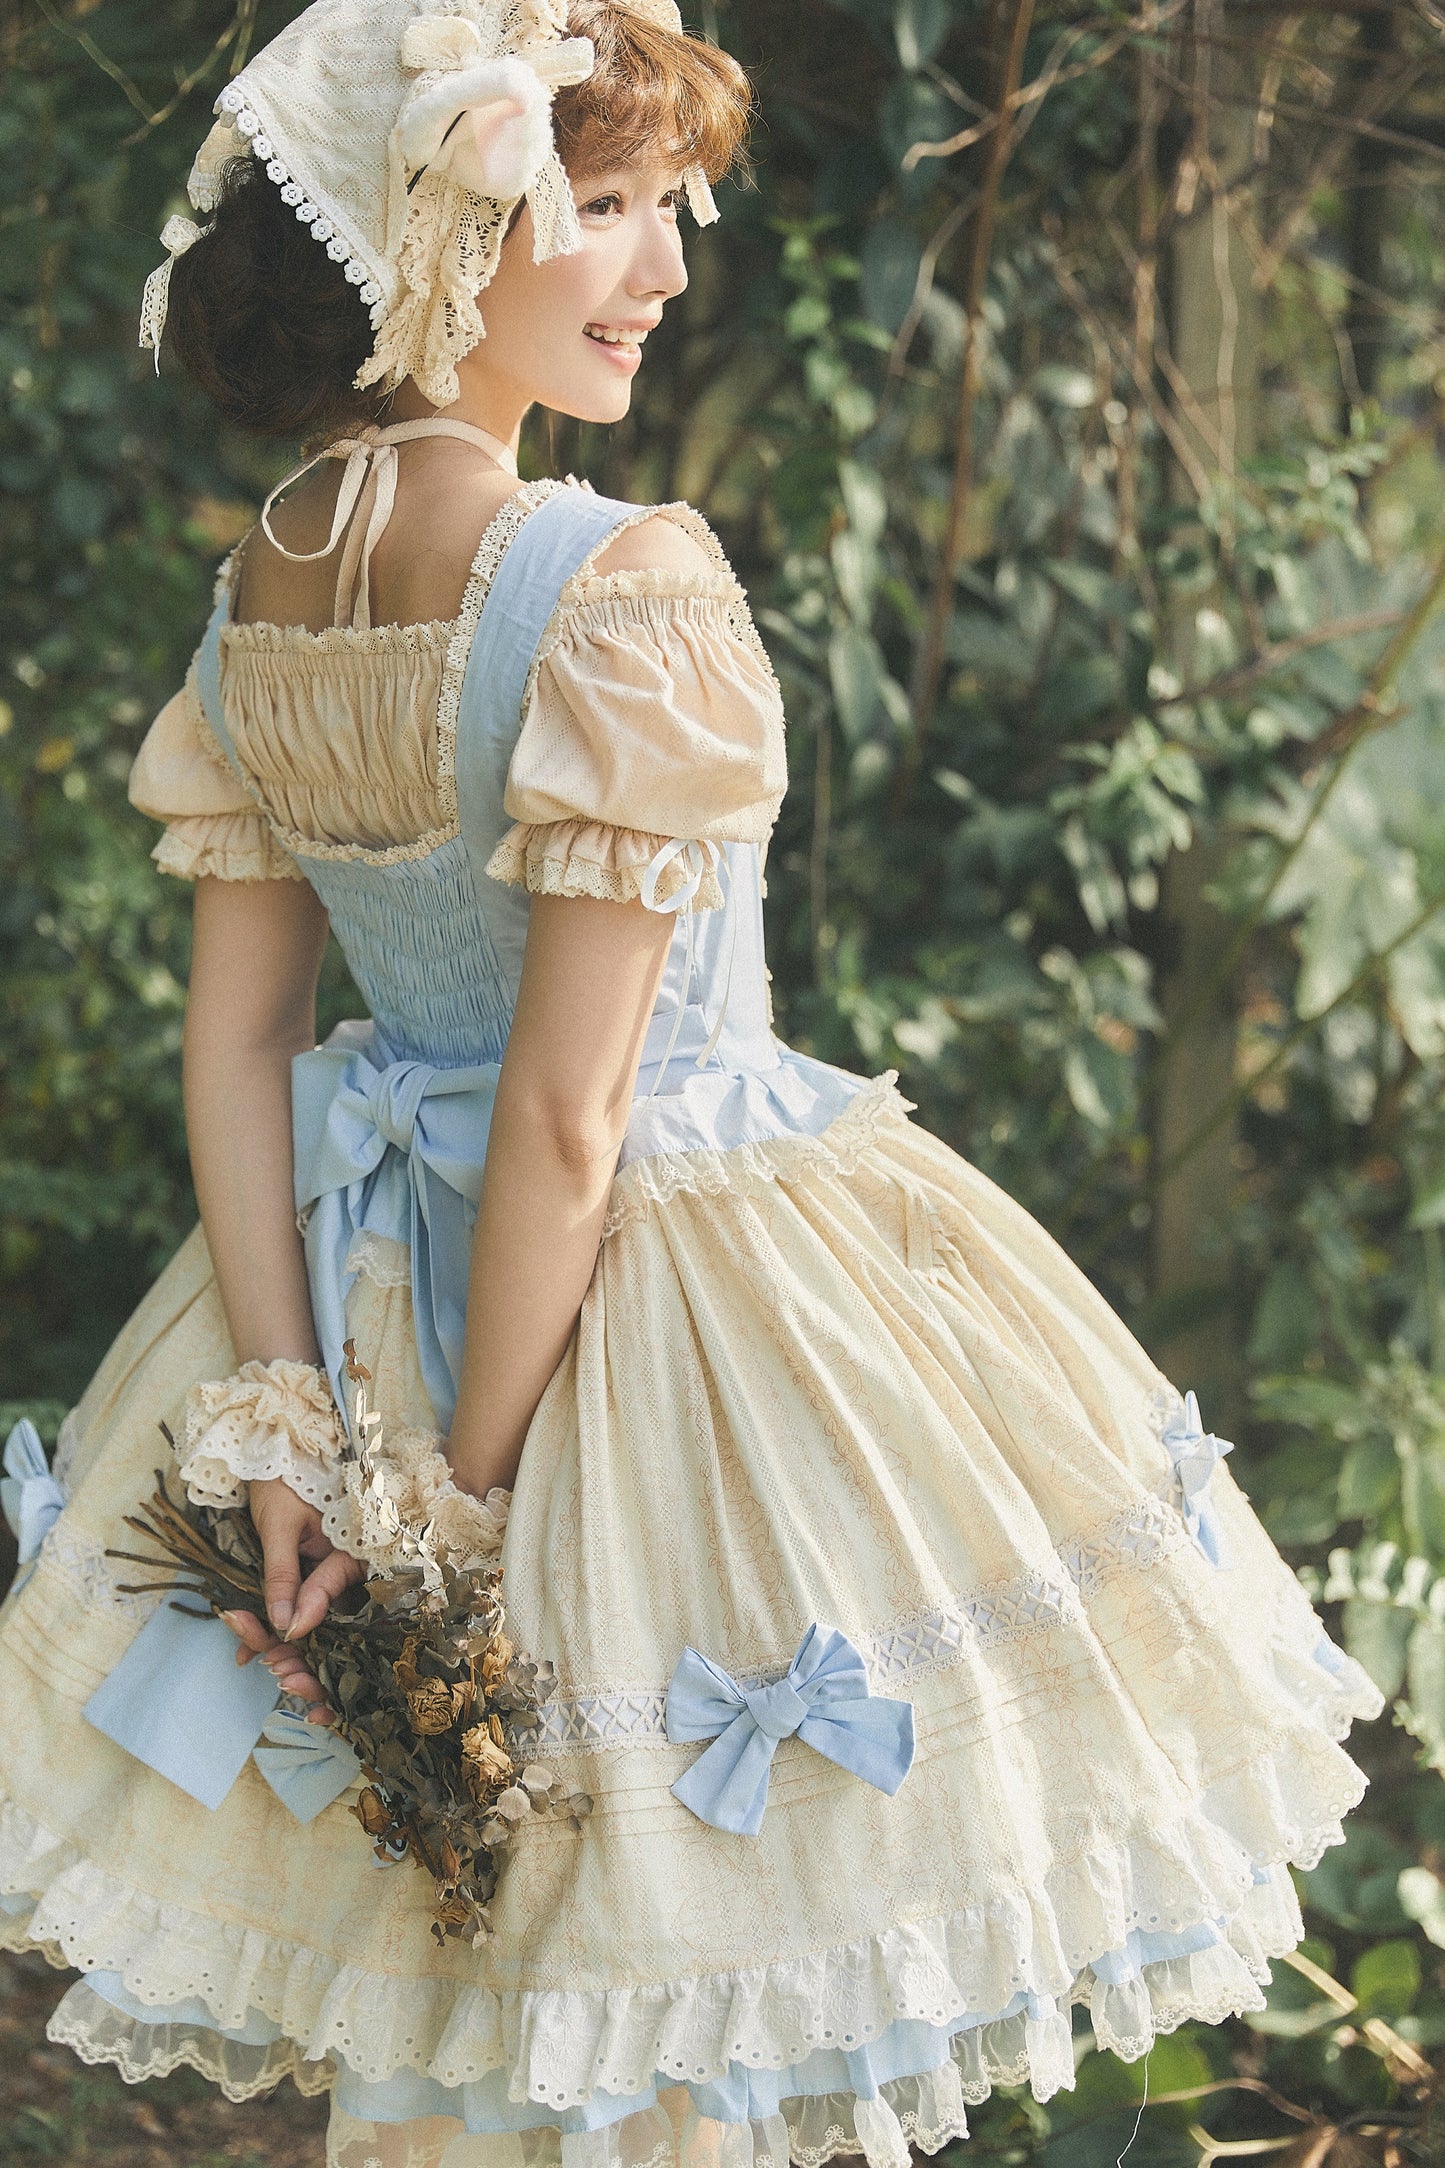 JSK Dress♥Pre-order♥ Nursery Rhyme ♥Sweet Lolita Dress